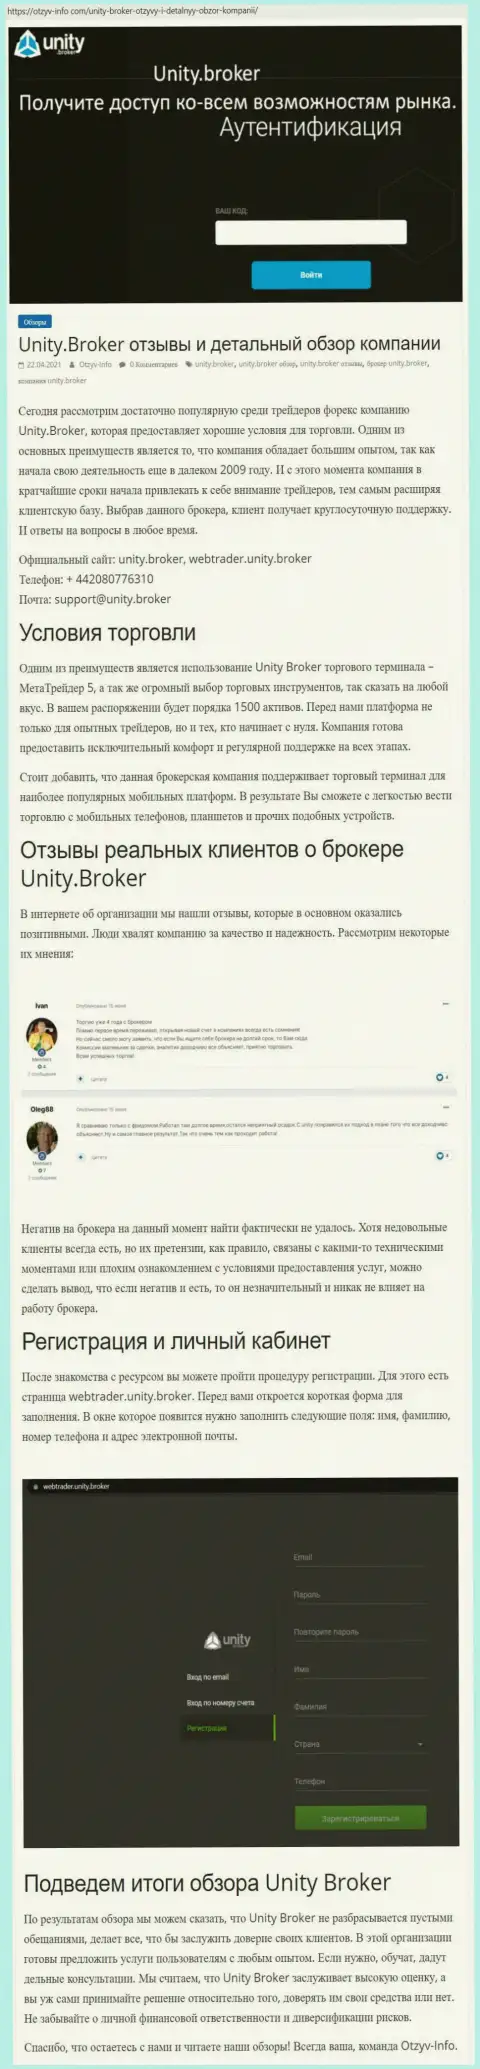 Обзор работы Форекс-брокера Унити Брокер на сайте otzyv-info com